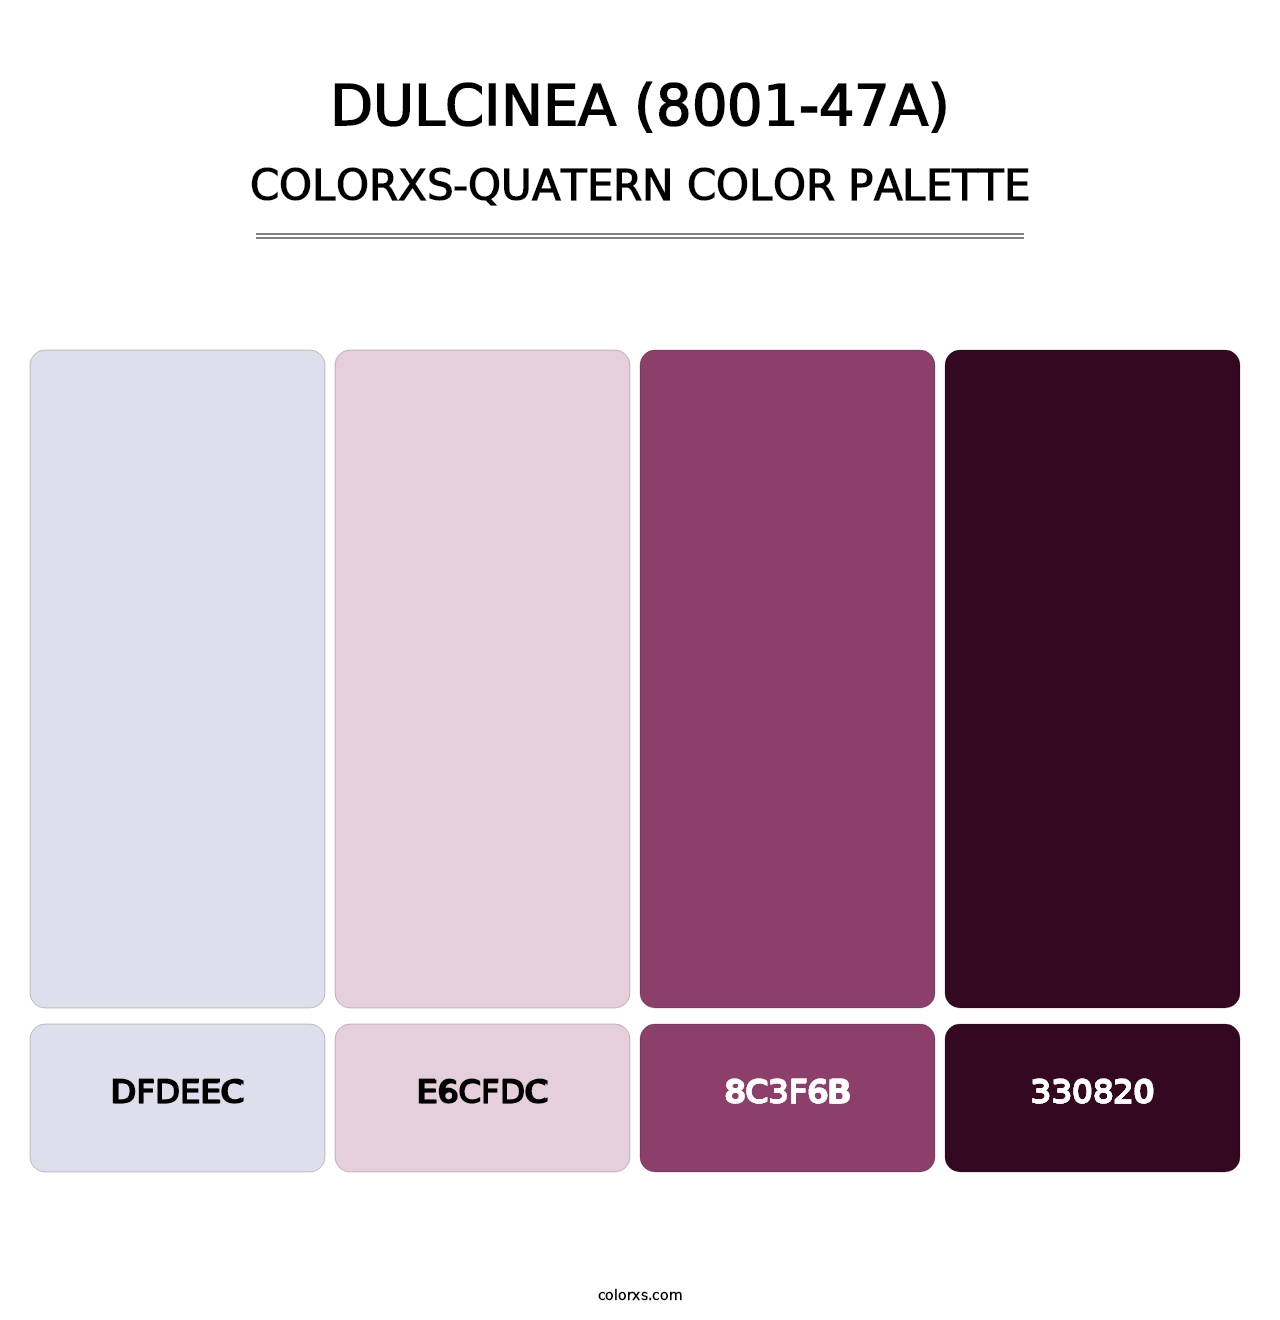 Dulcinea (8001-47A) - Colorxs Quatern Palette